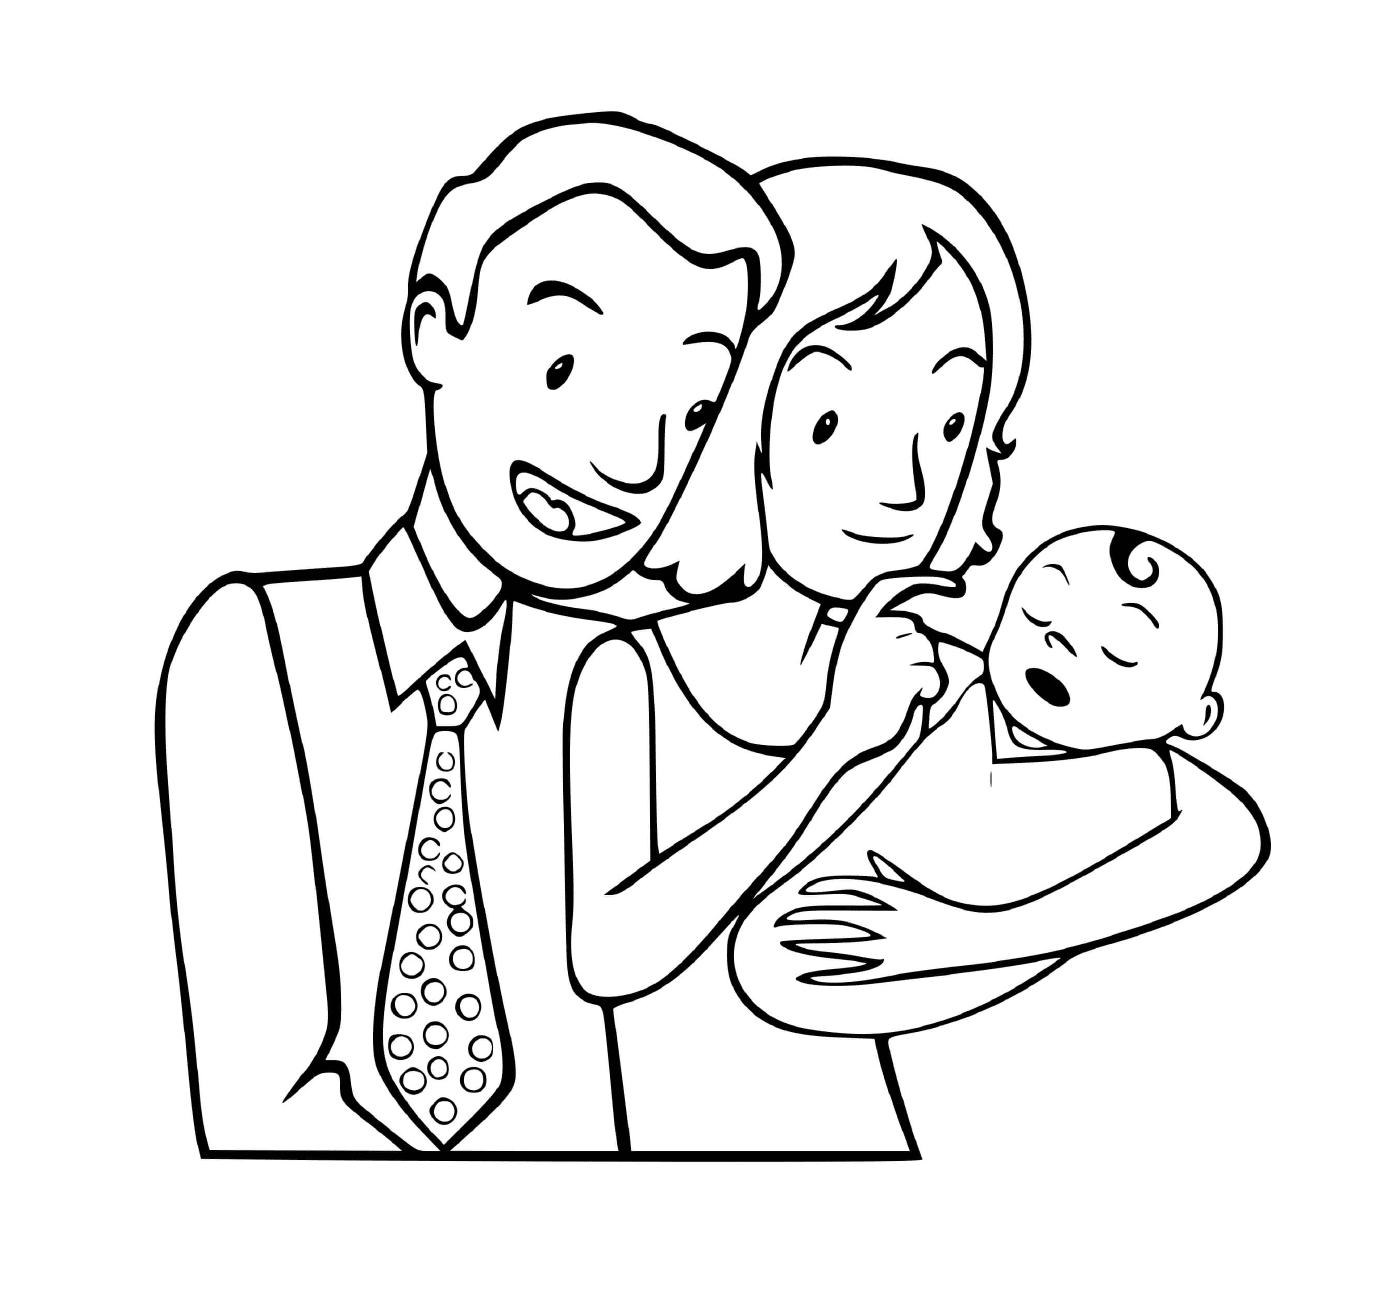  Eine kleine Familie mit einem Neugeborenen 